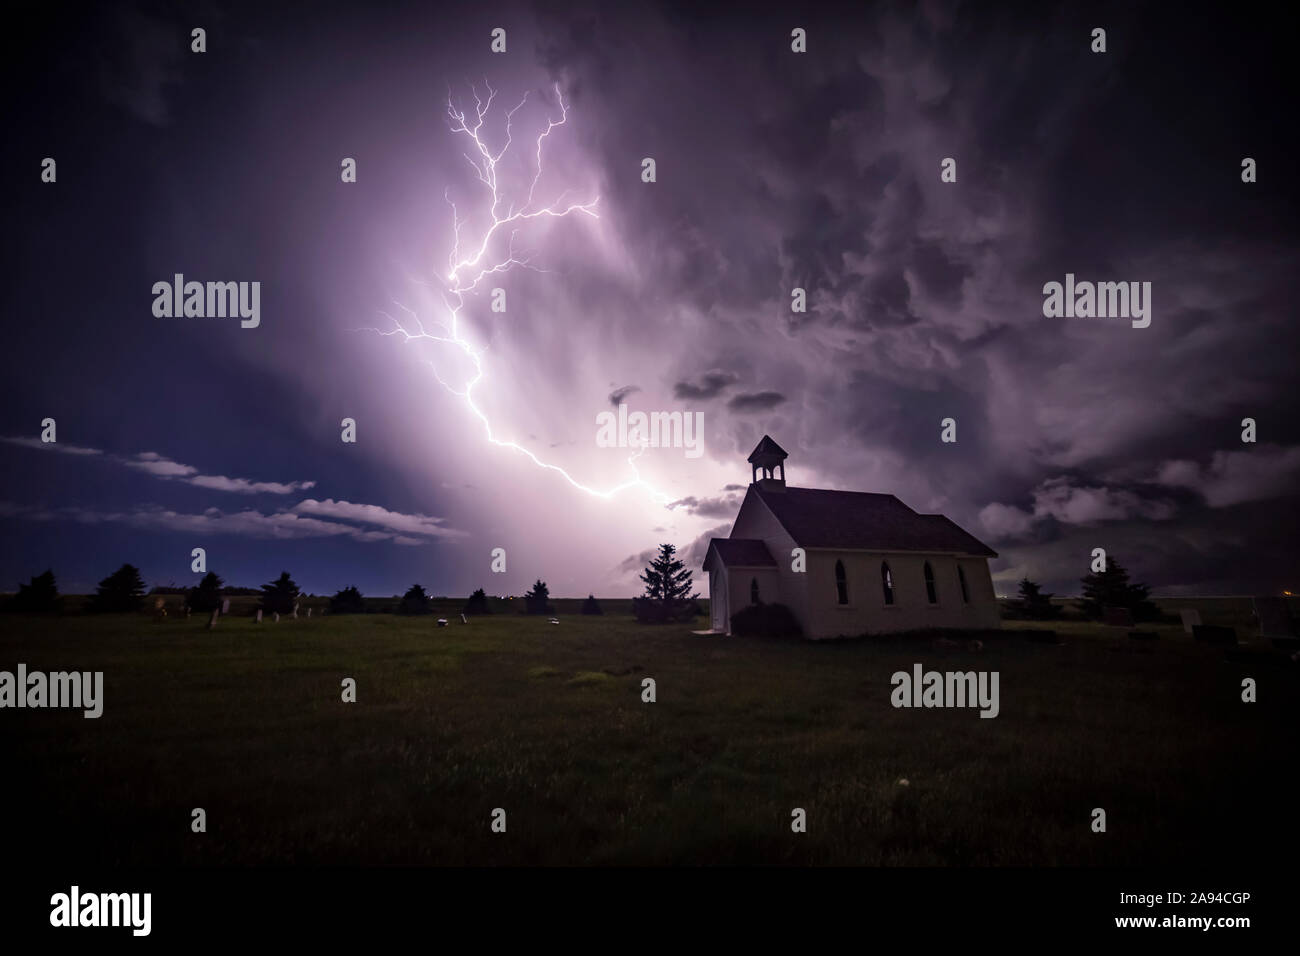 Belle et lumineuse tempête électrique avec une église au premier plan; Moose Jaw, Saskatchewan, Canada Banque D'Images